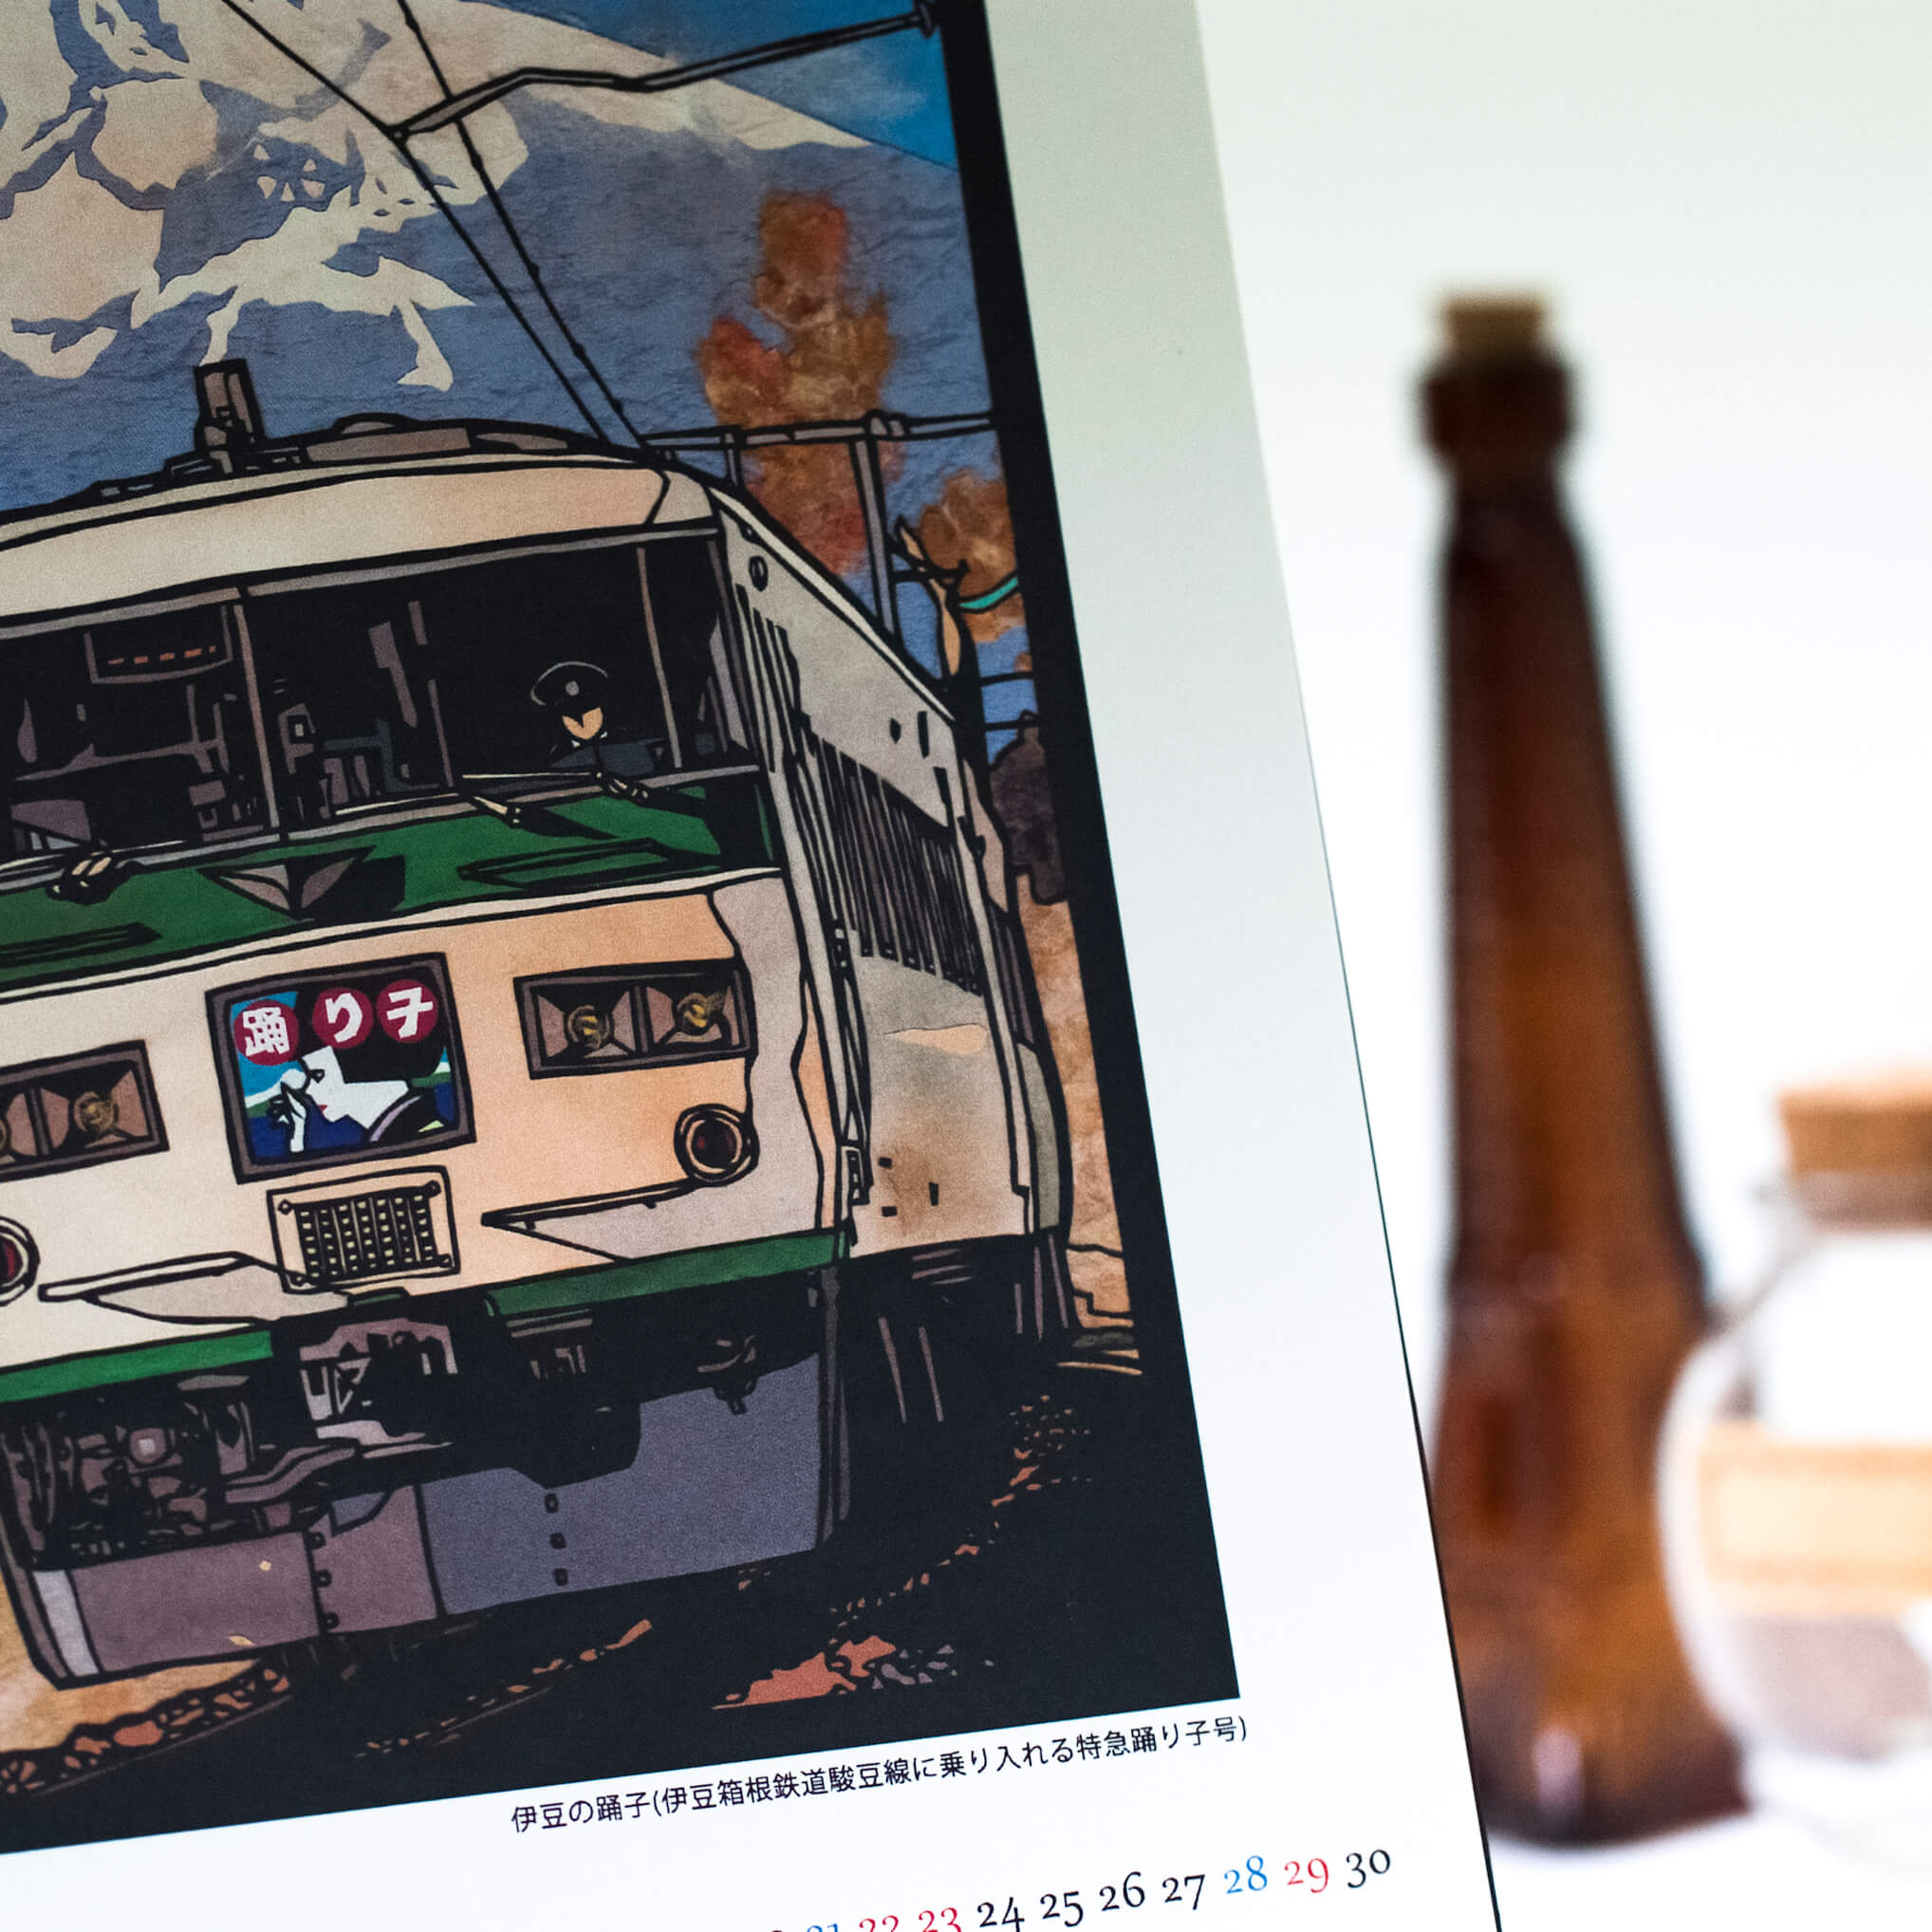 「鶴岡  景子 様」製作のオリジナルカレンダー ギャラリー写真3